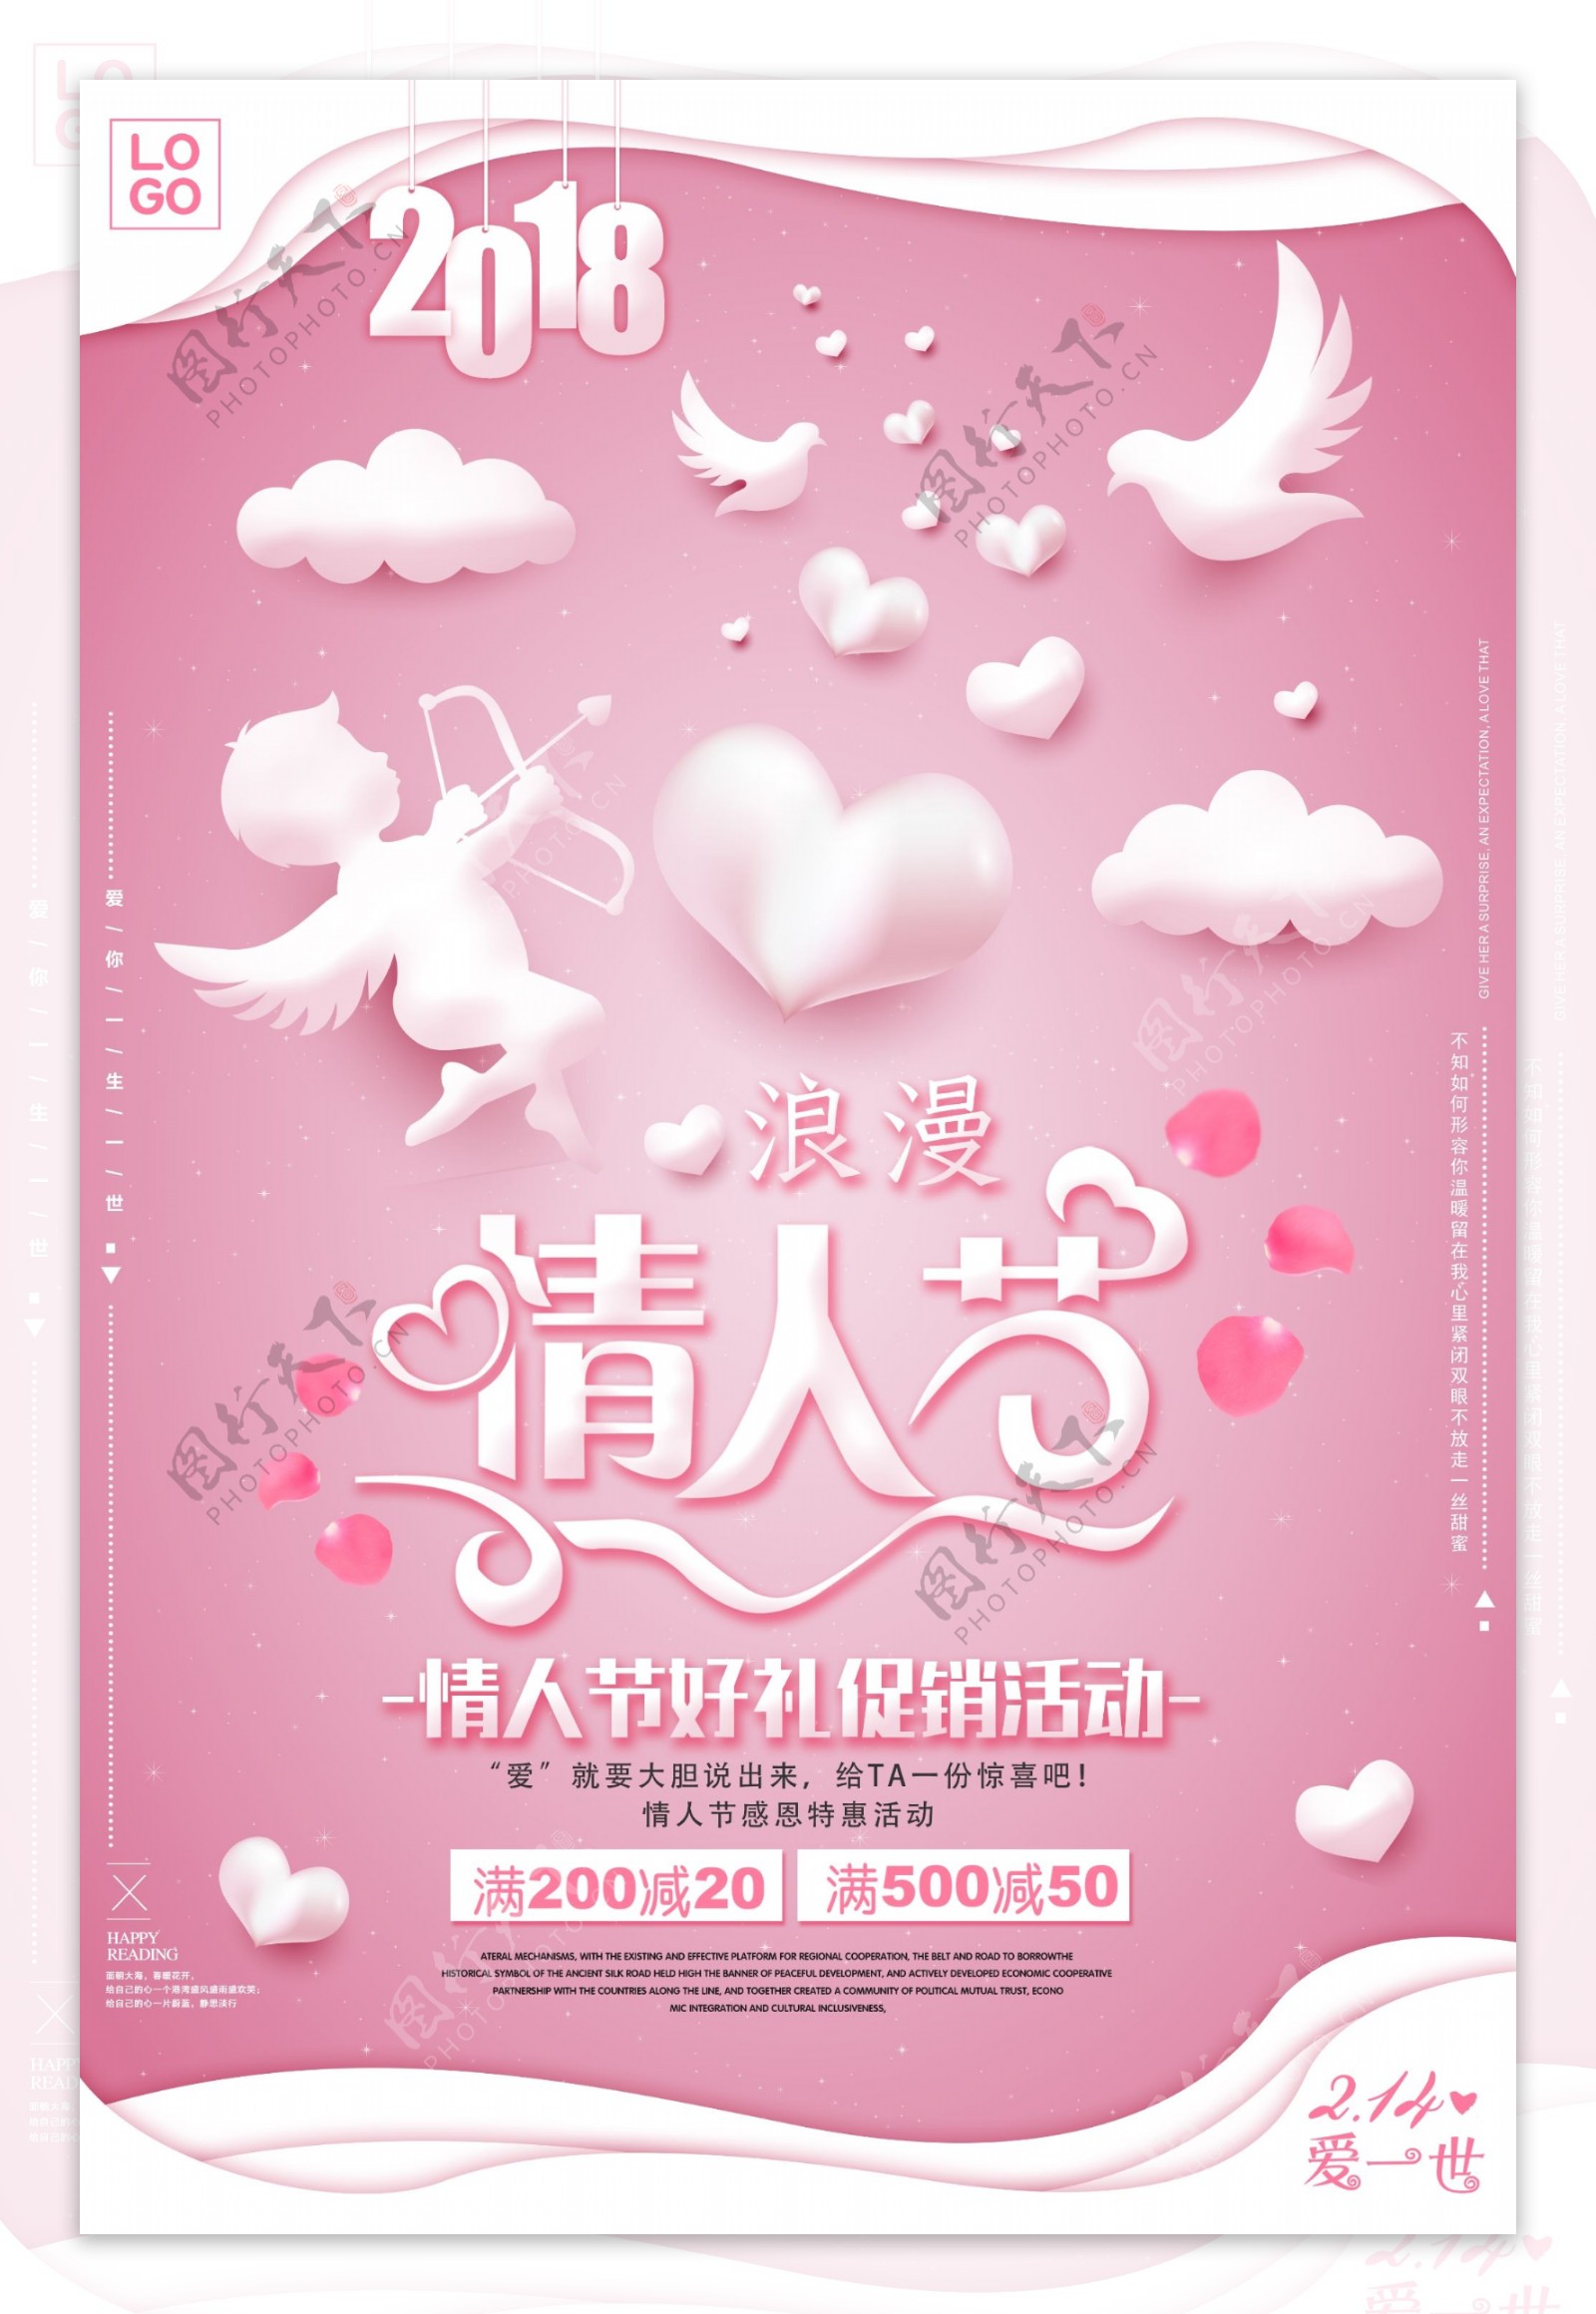 粉色浪漫风格情人节促销海报模板下载